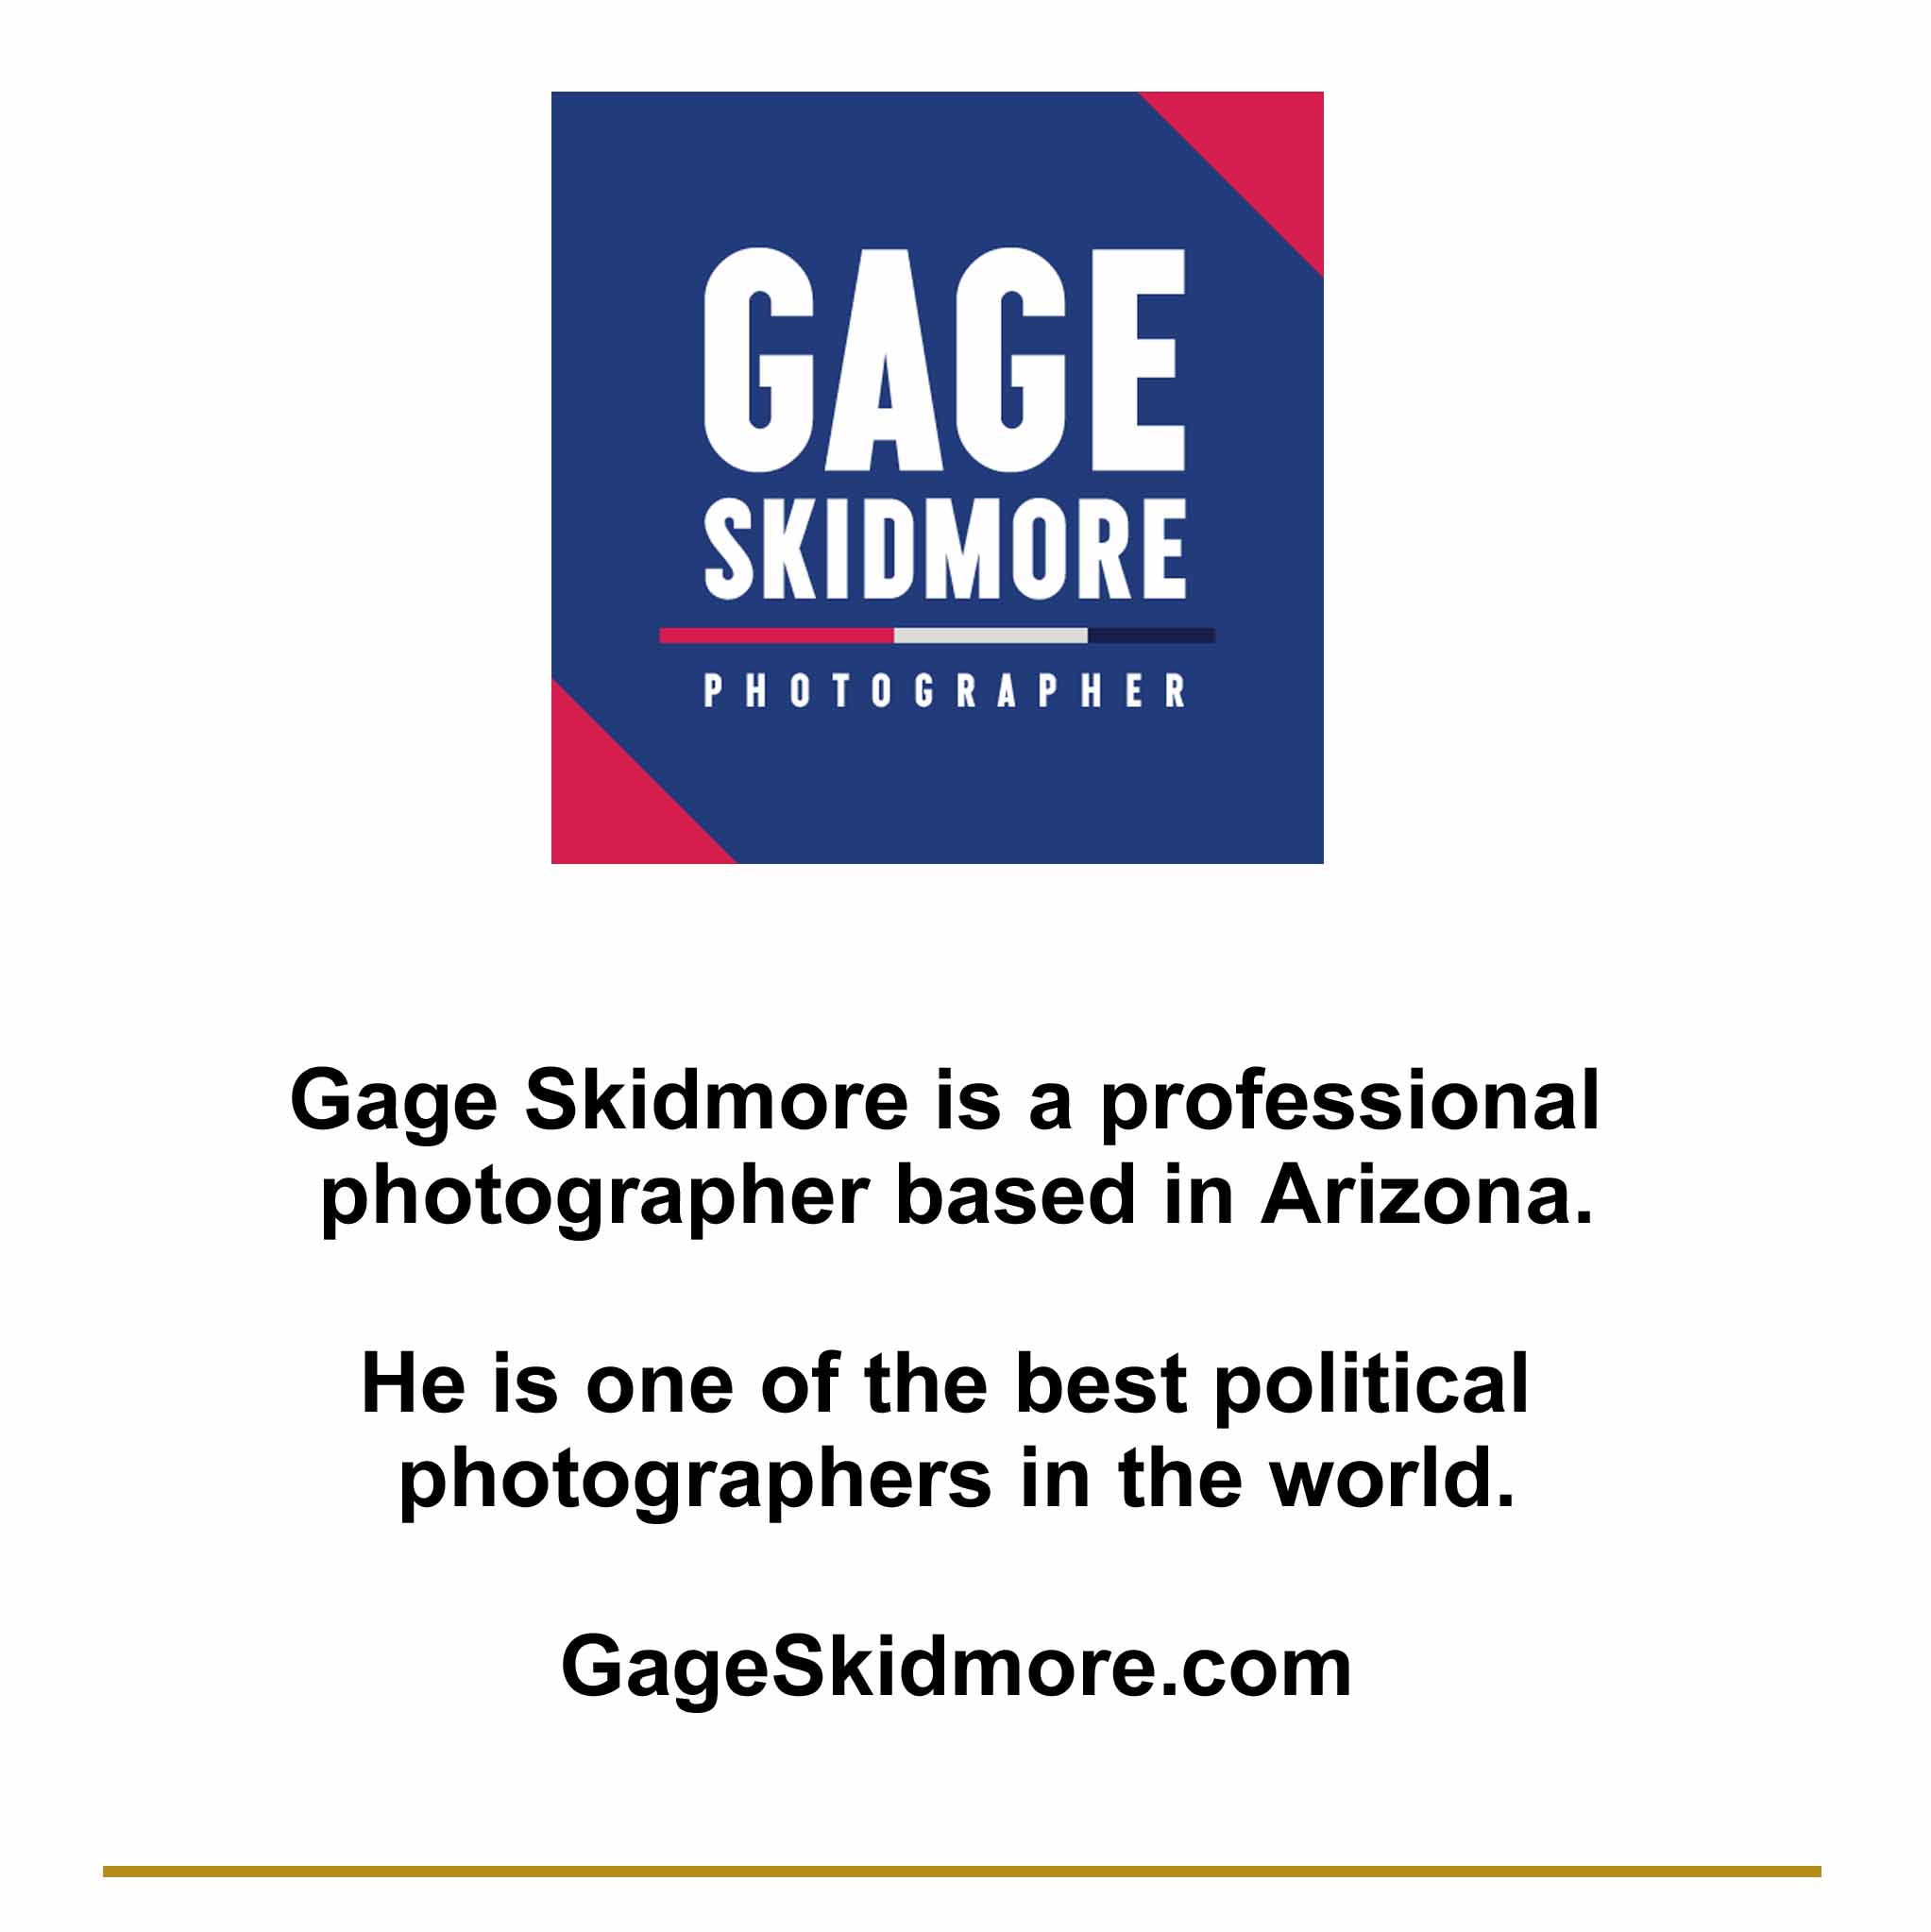 GageSkidmore.com